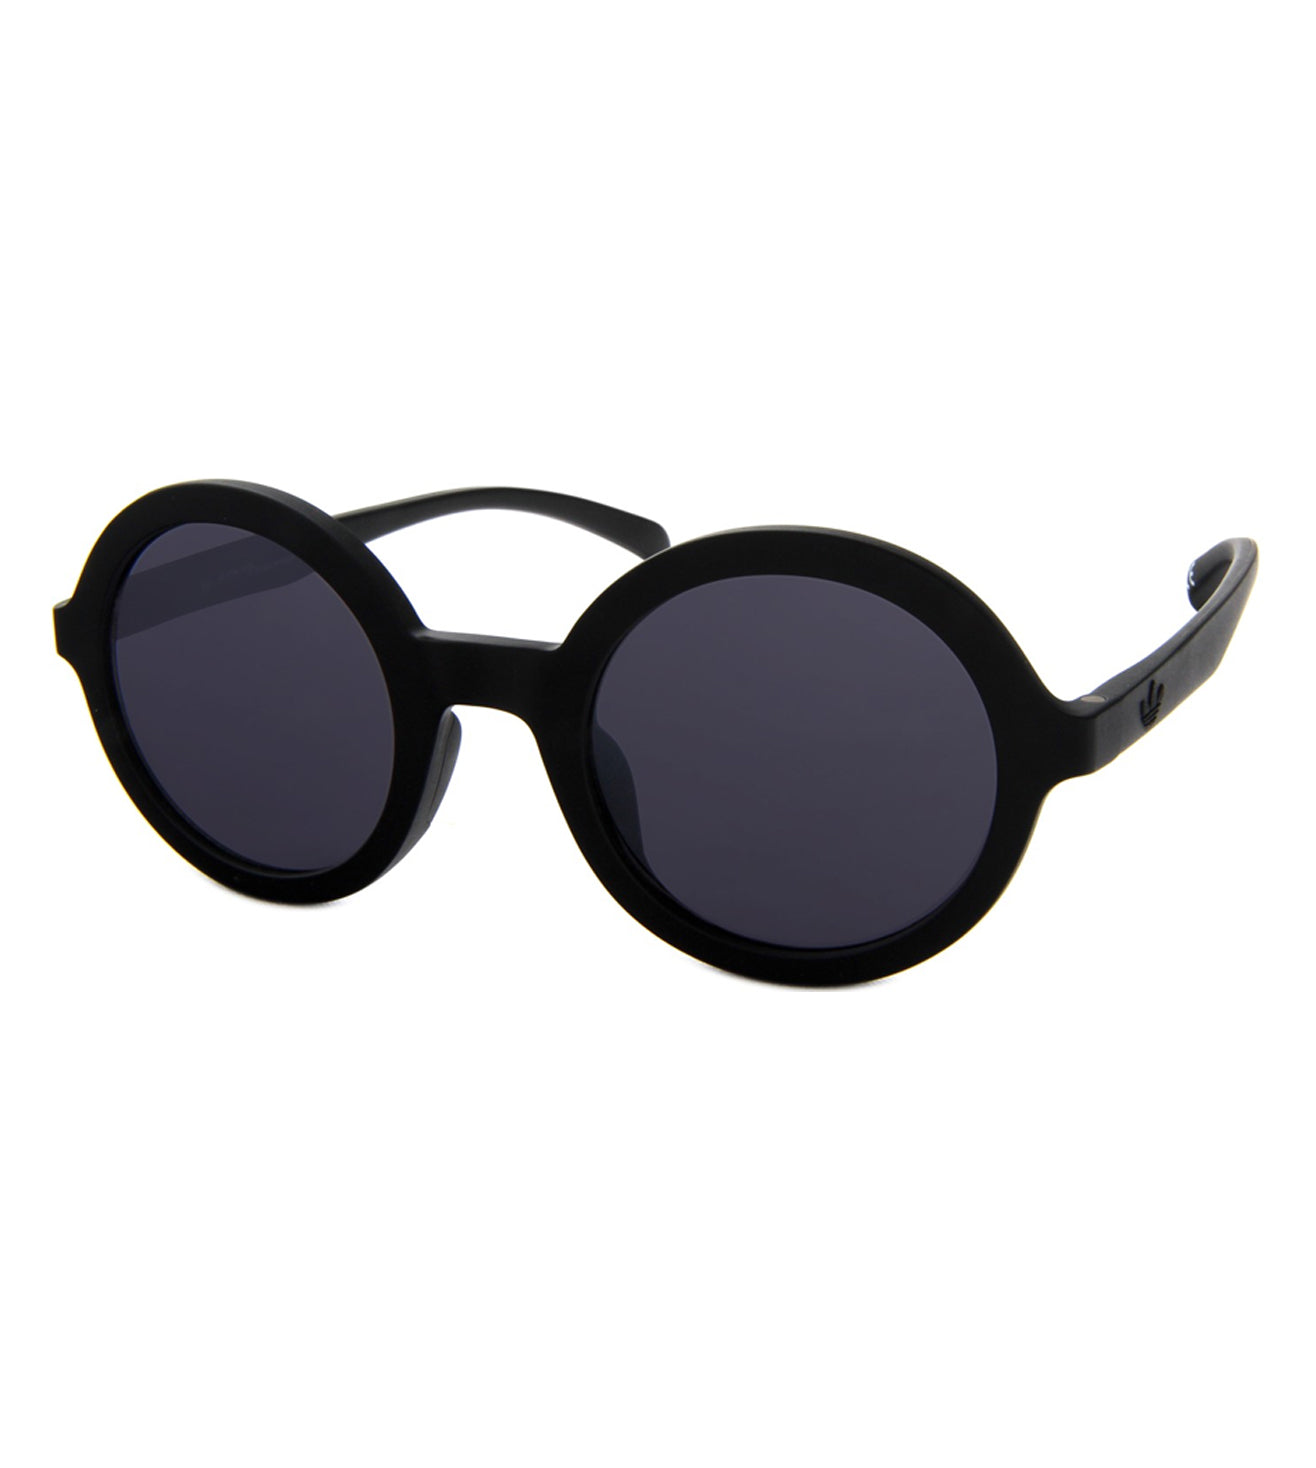 Grey Round Women Sunglasses